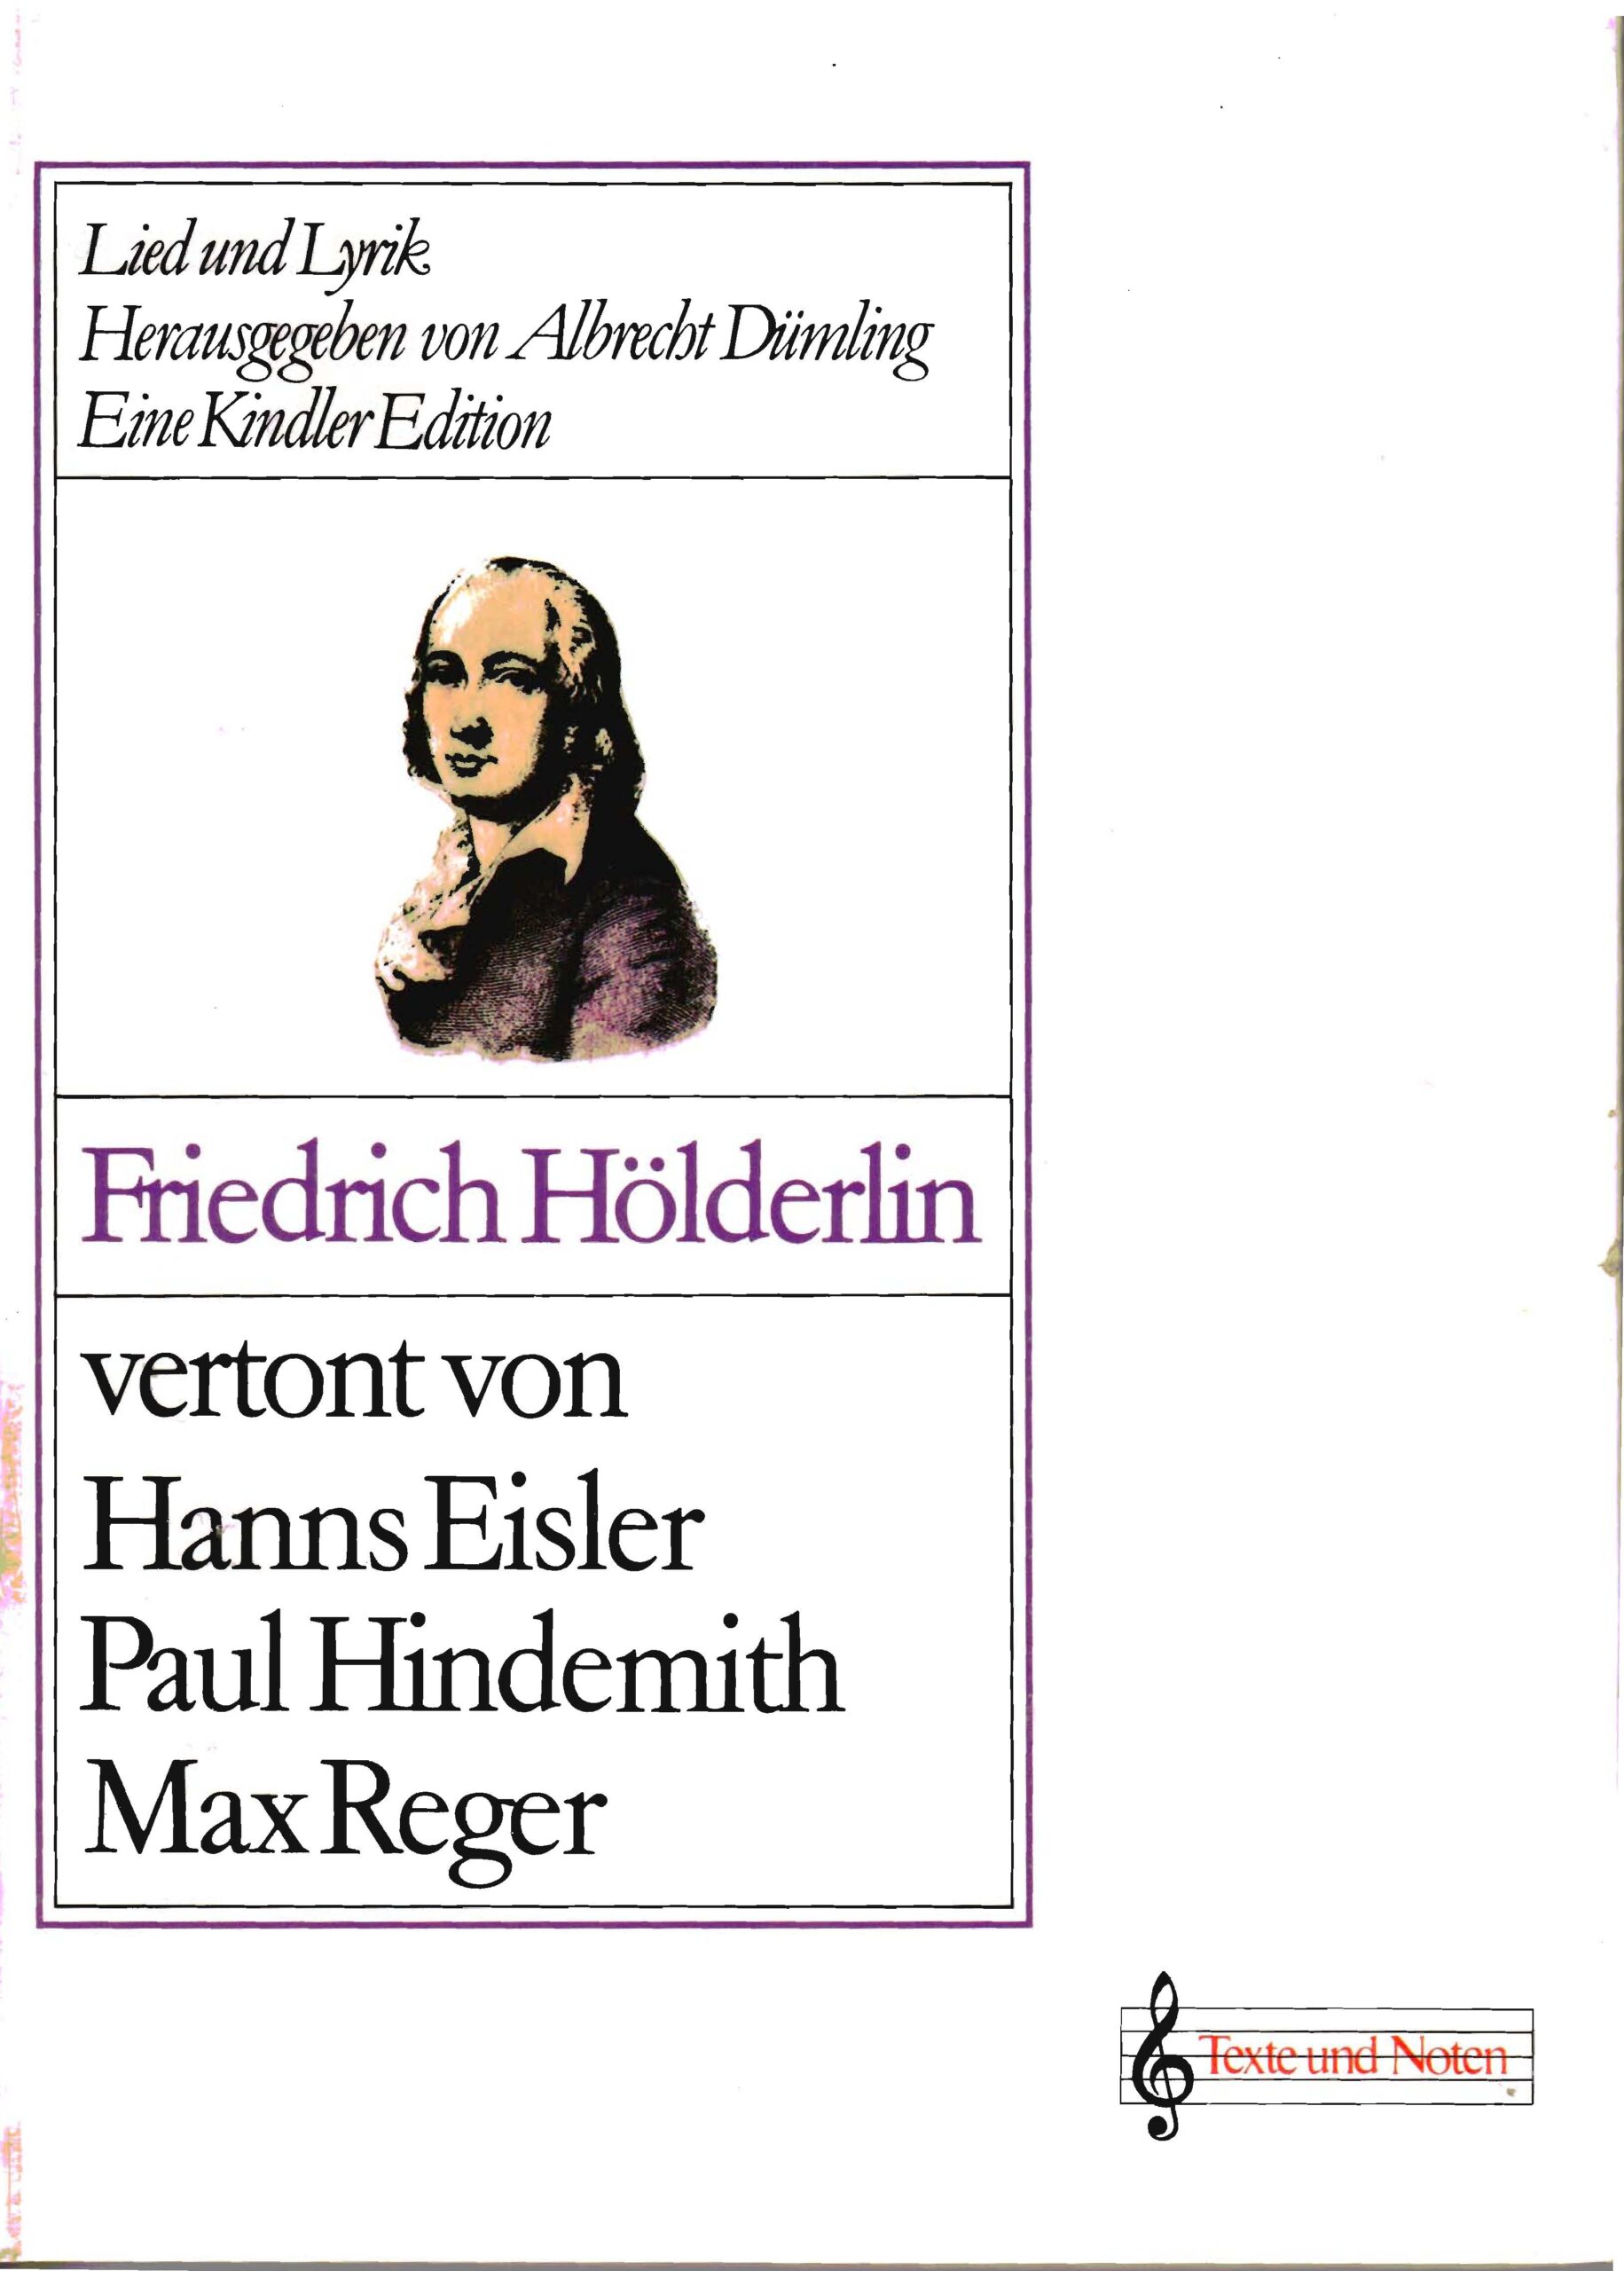 Friedrich Hölderlin vertont von Max Reger, Paul Hindemith, Hanns Eisler